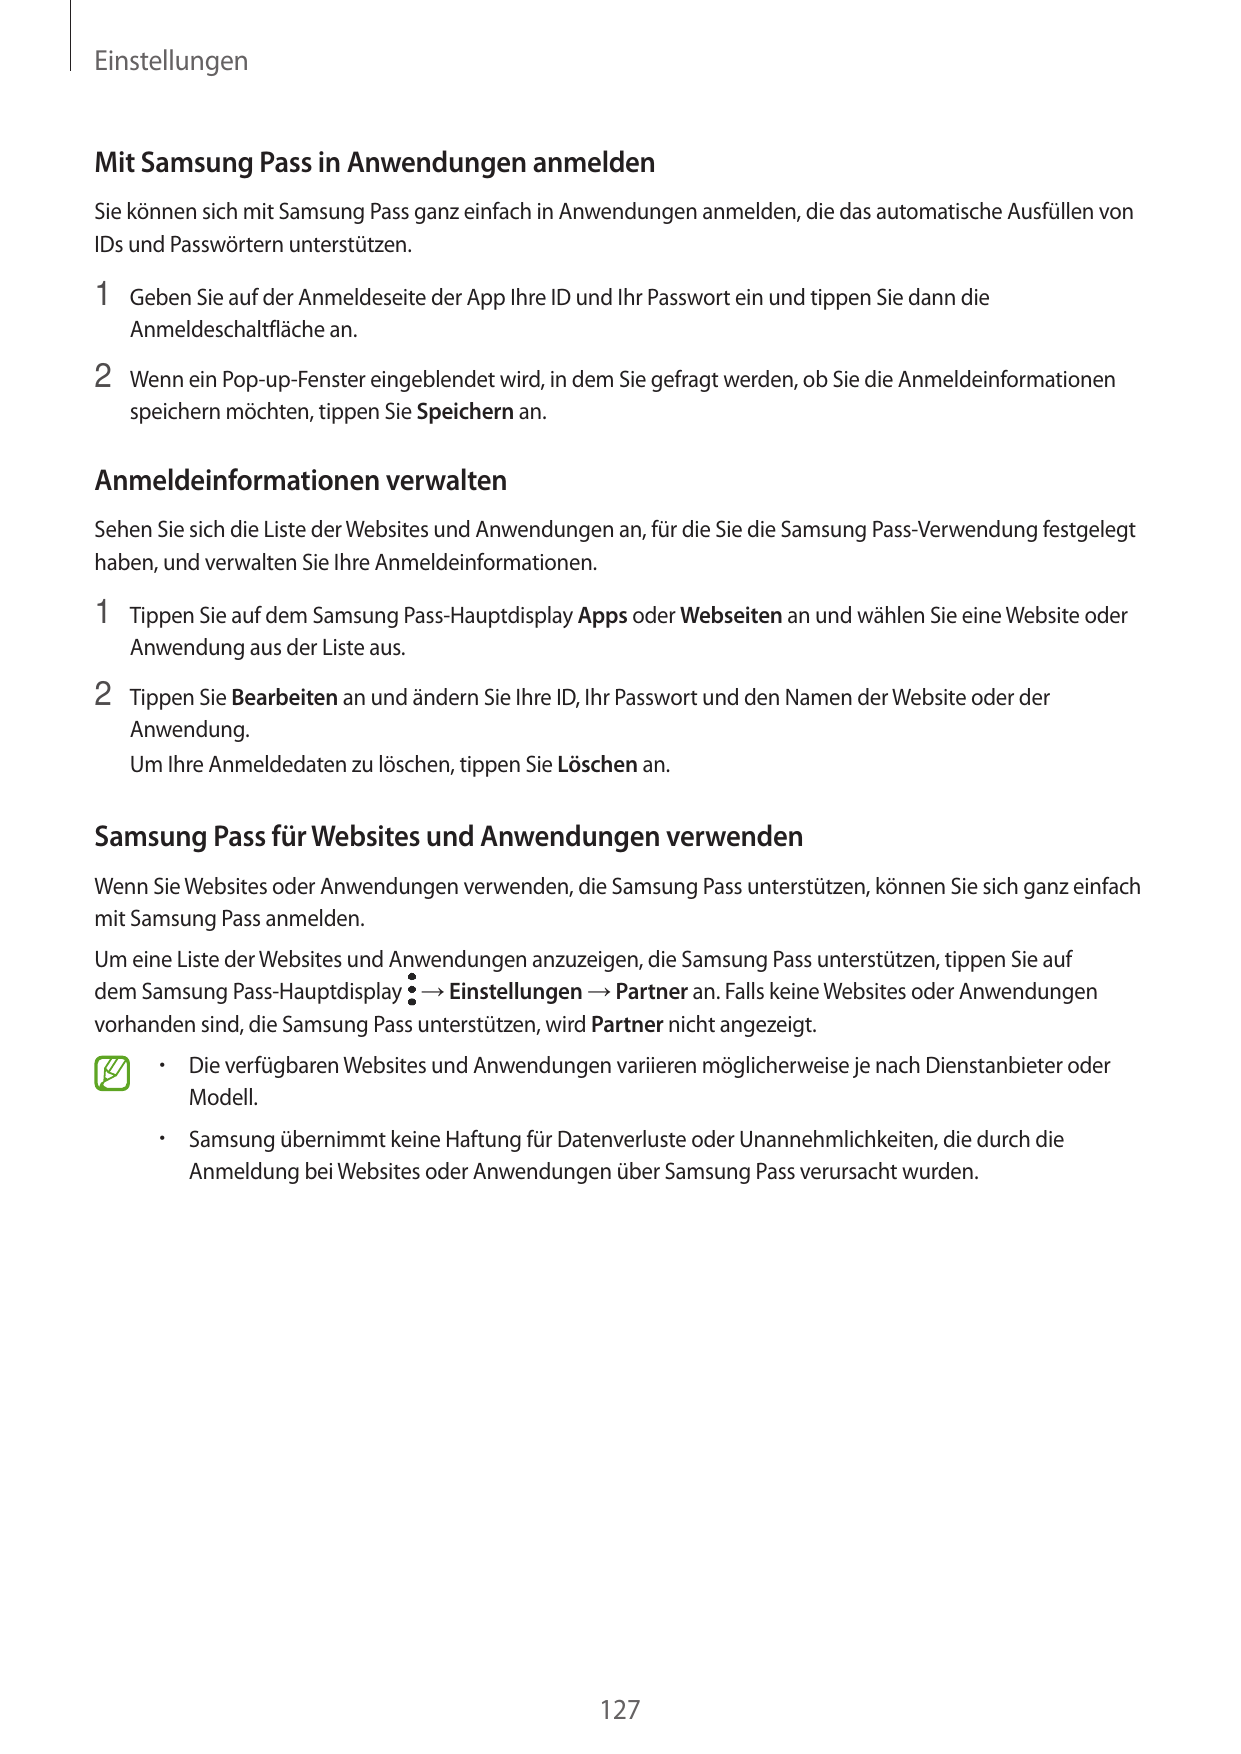 EinstellungenMit Samsung Pass in Anwendungen anmeldenSie können sich mit Samsung Pass ganz einfach in Anwendungen anmelden, die 